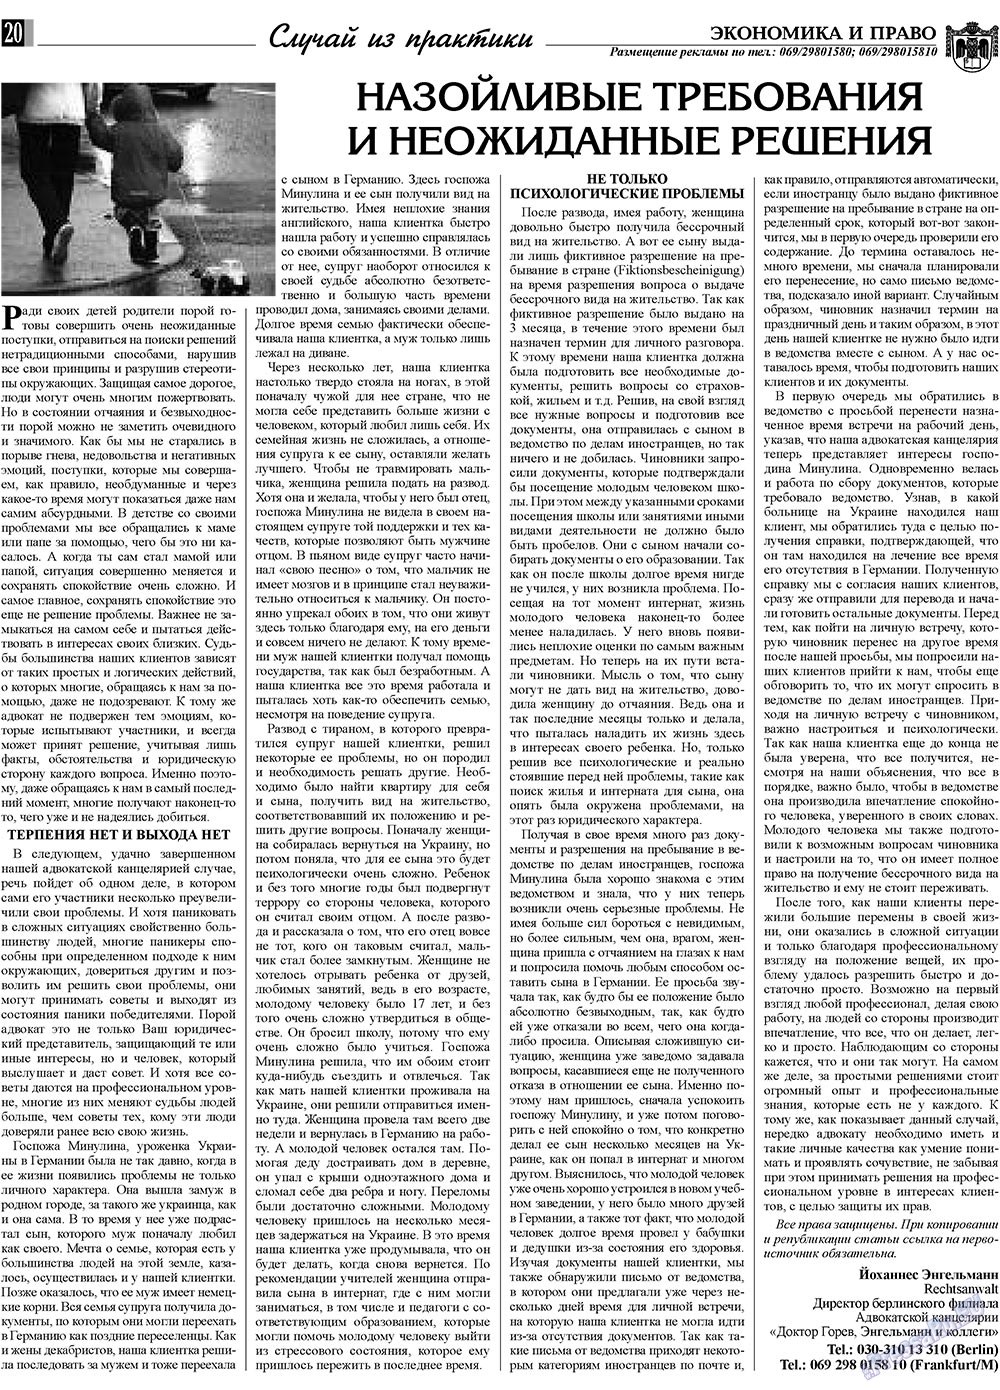 Экономика и право, газета. 2009 №12 стр.20